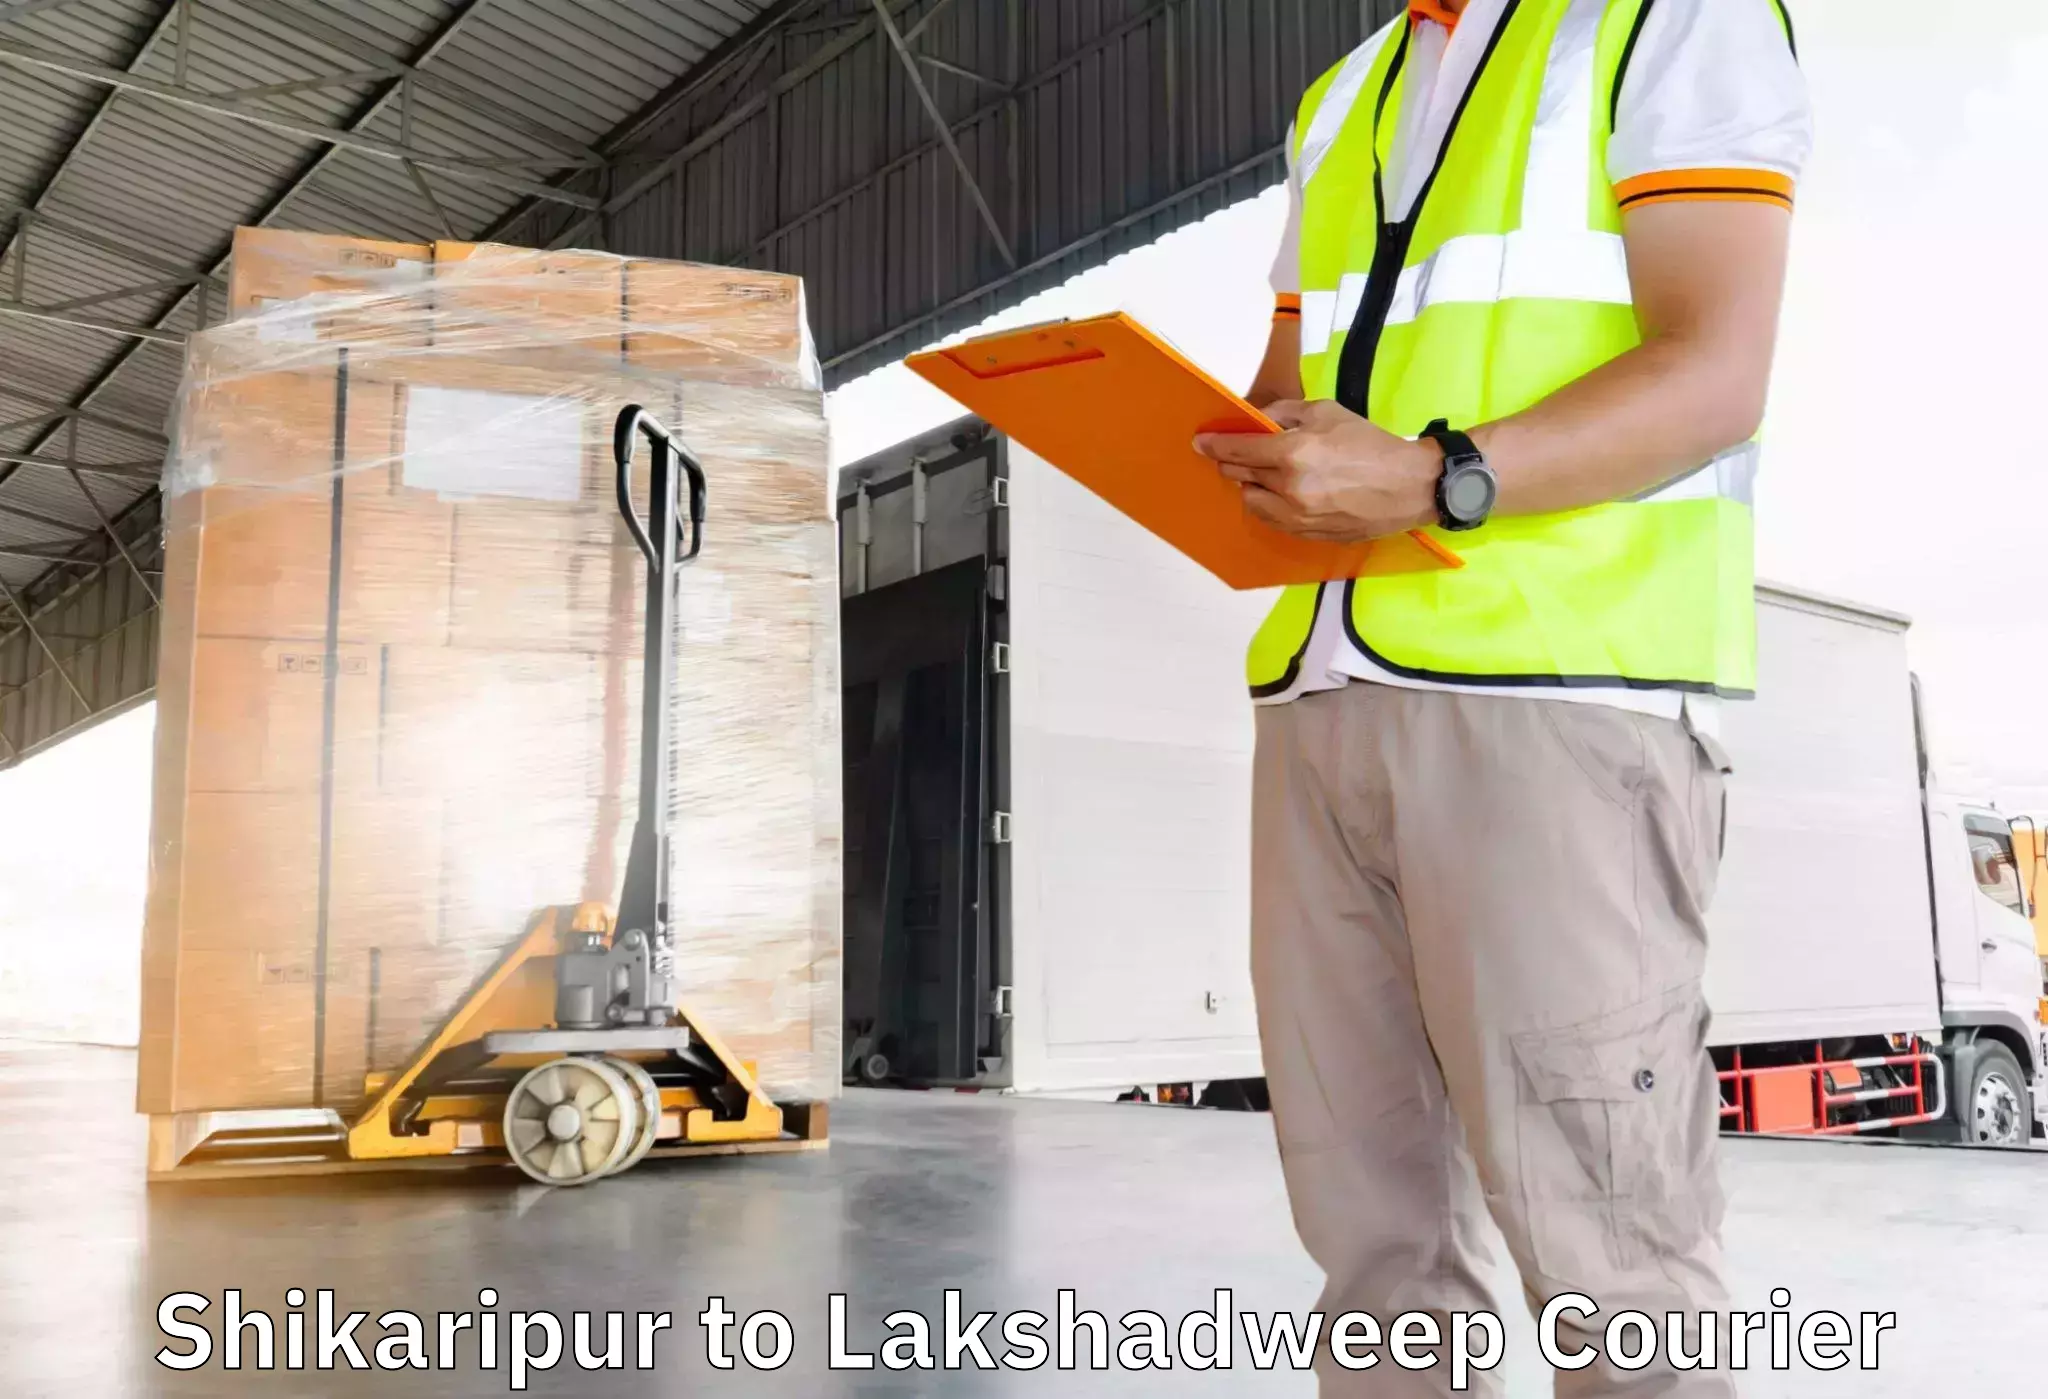 Premium furniture transport in Shikaripur to Lakshadweep